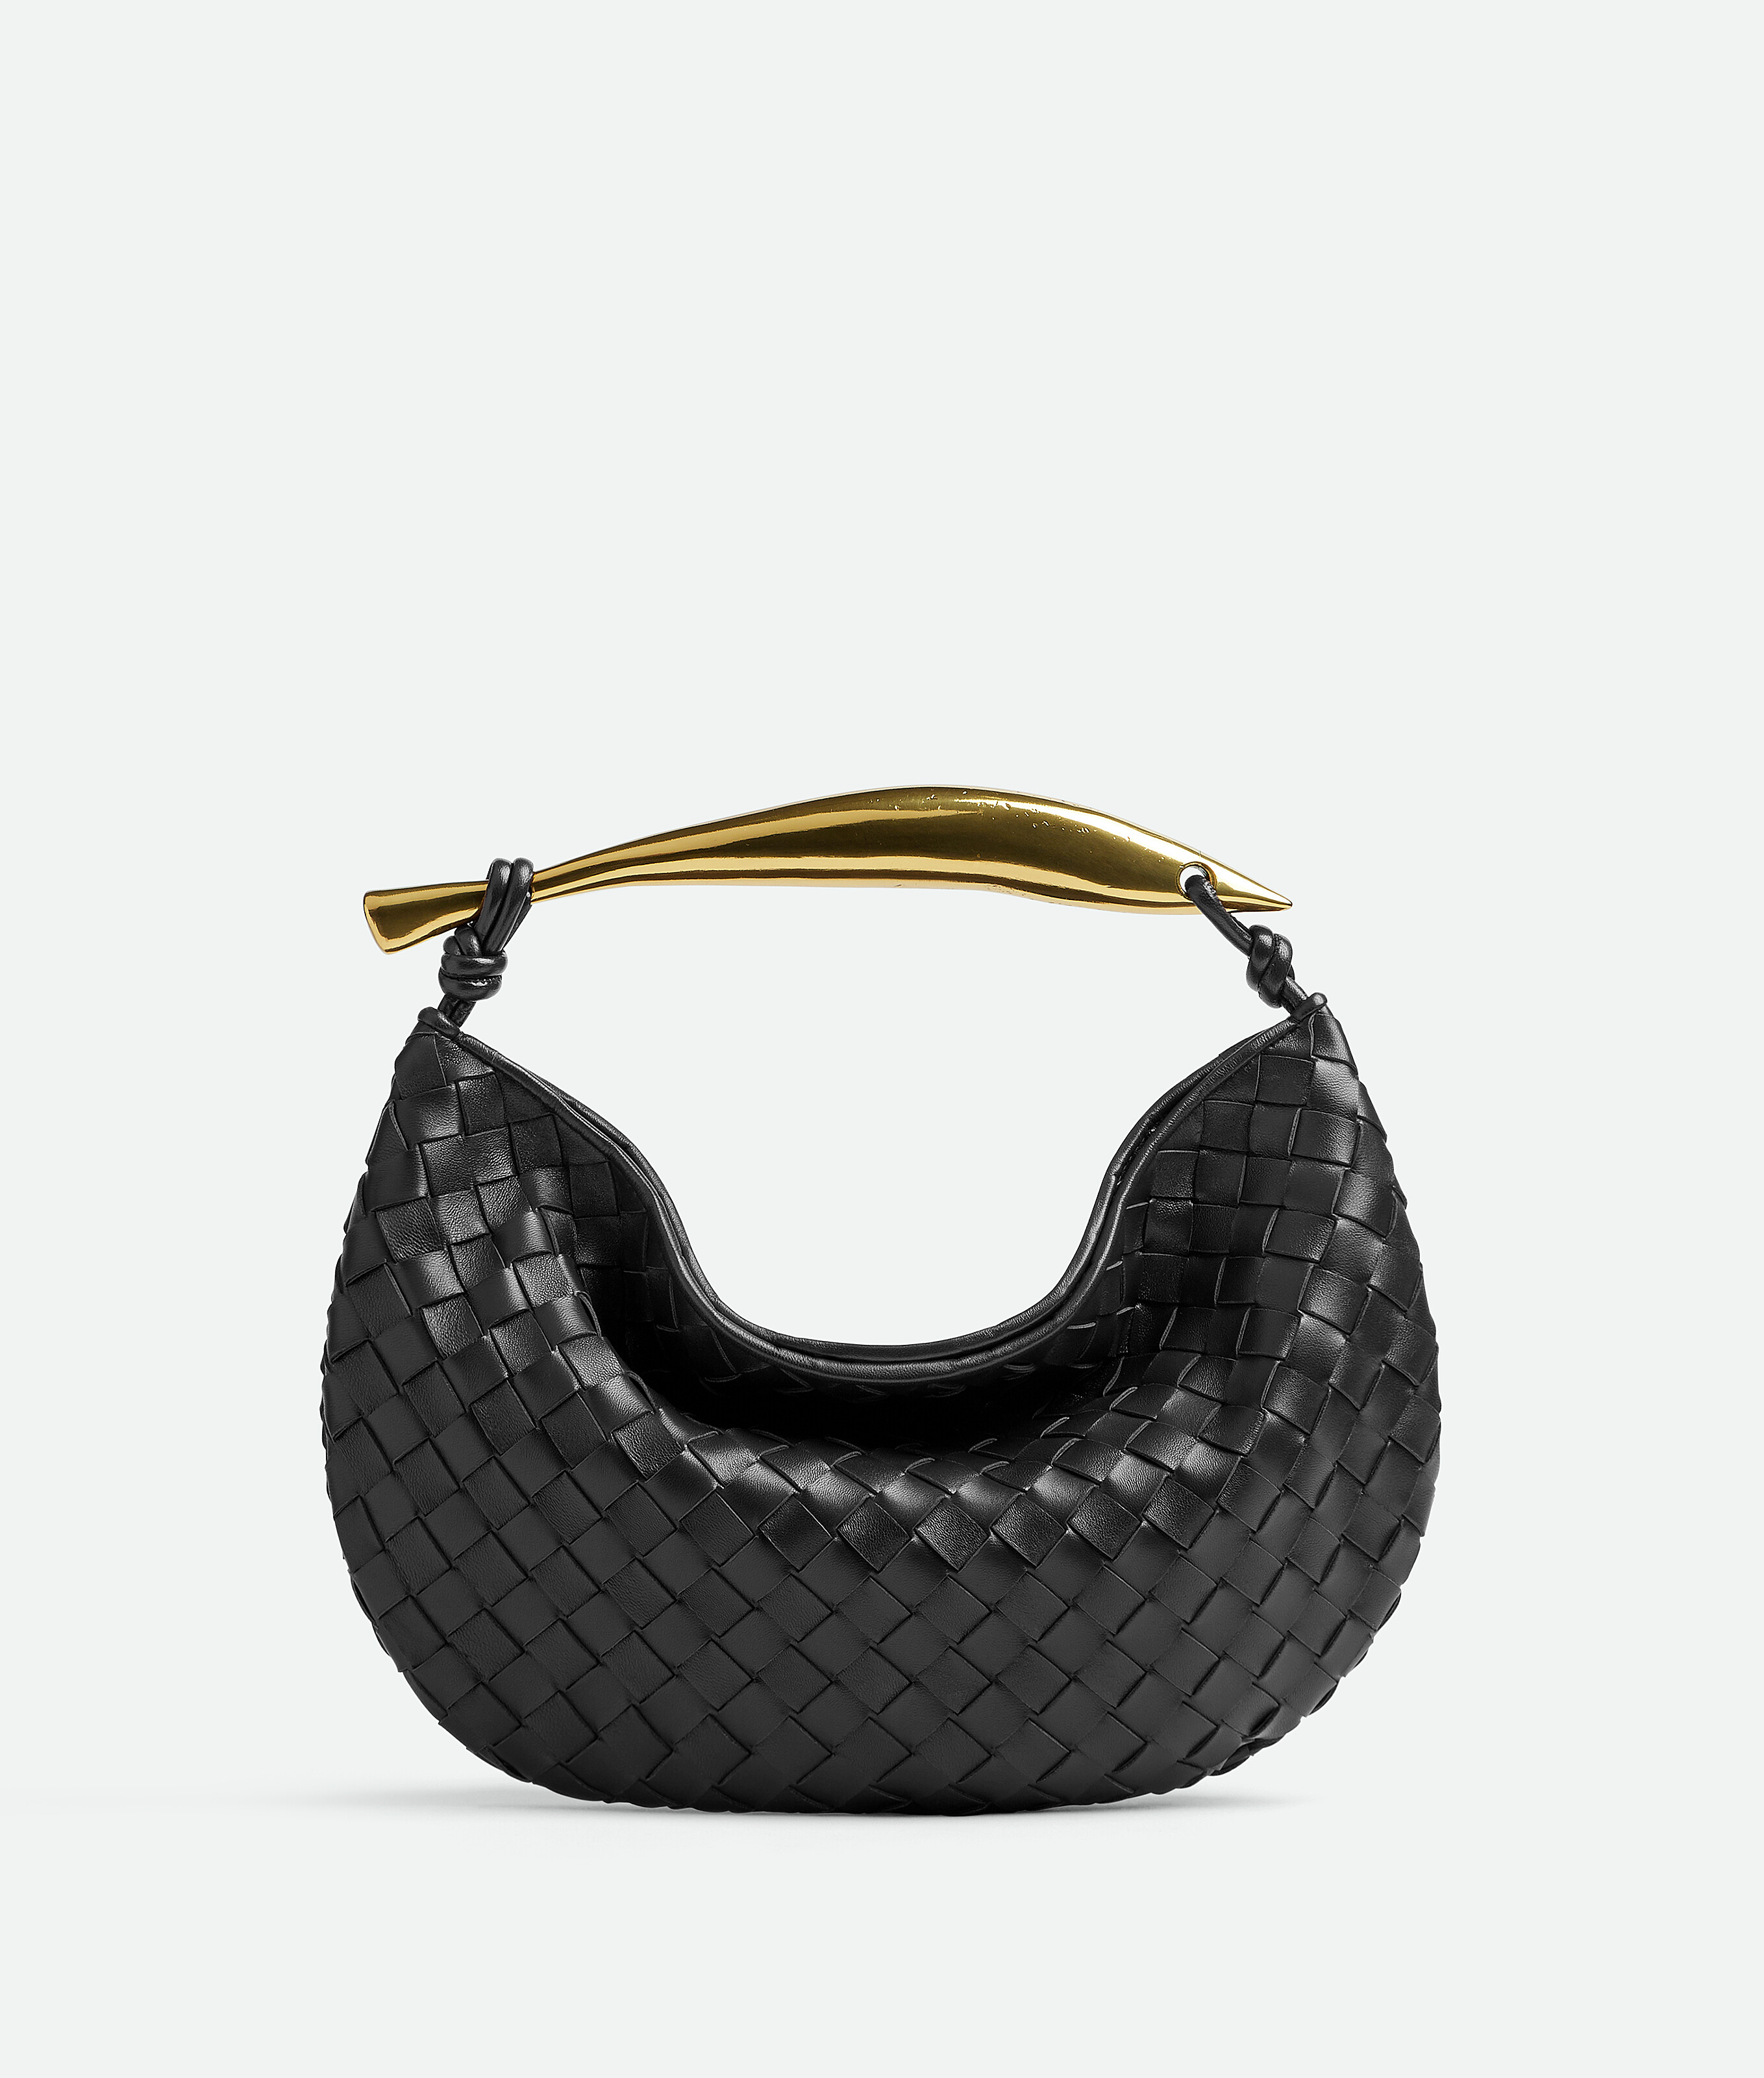 Bottega Veneta Women's Sardine Top Handle Bag